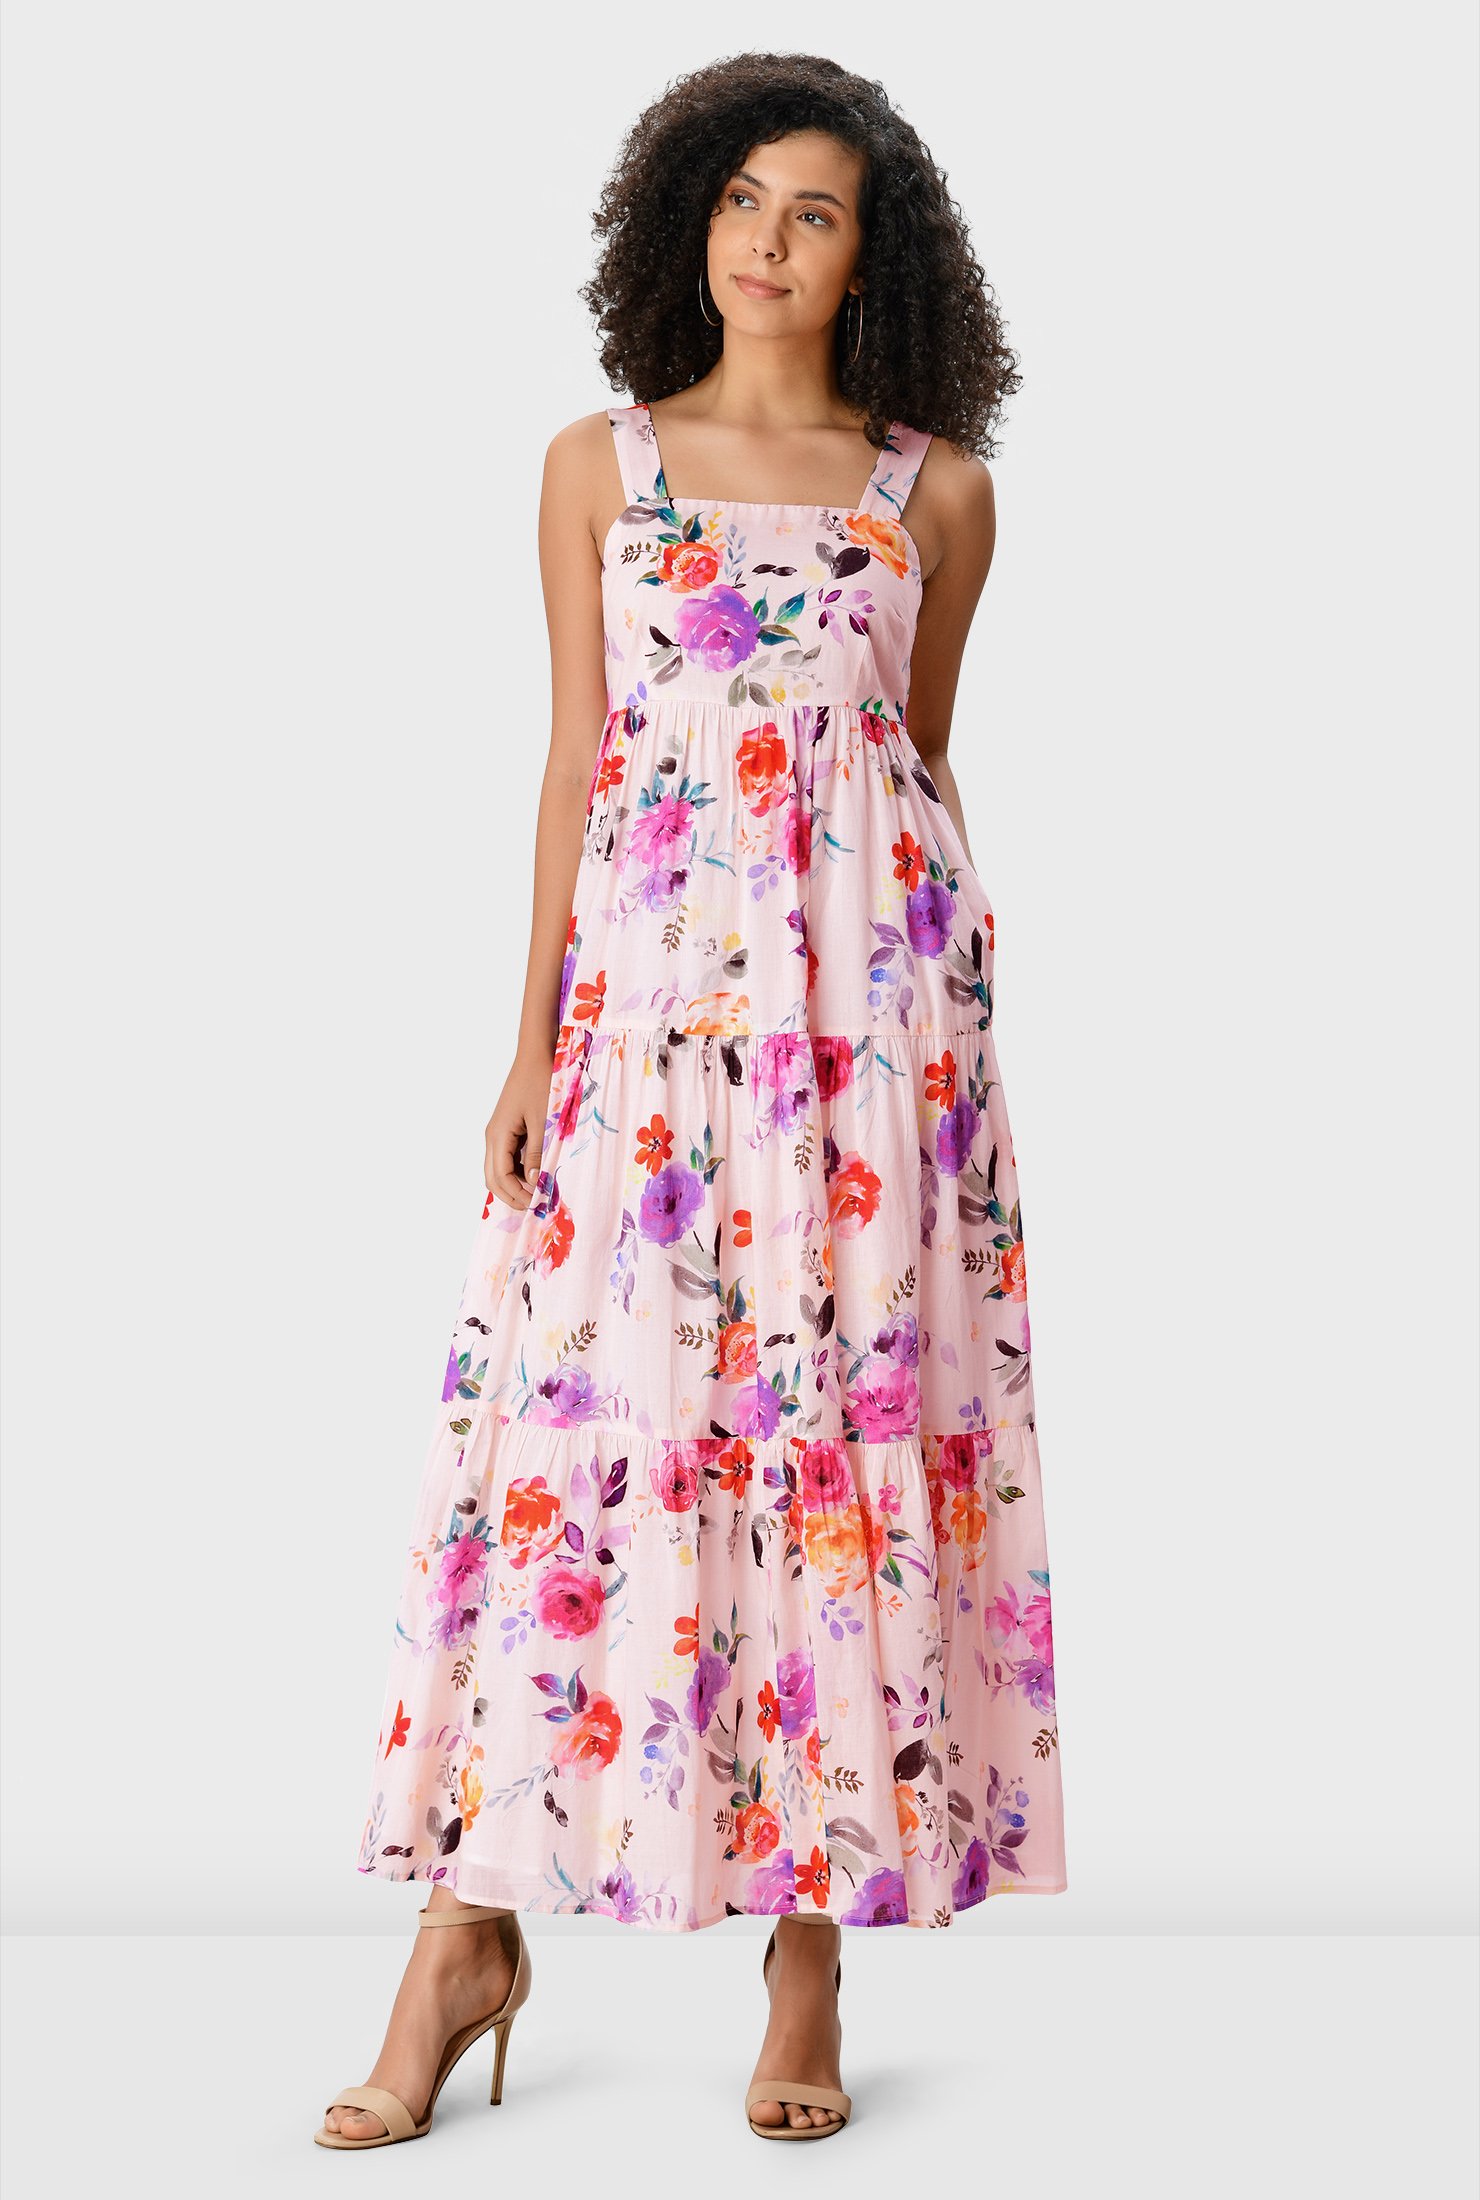 予約販売ワンピース純日本製 ⚠︎8/13まで⚠︎Watercolor Floral Tiered Dress ロング